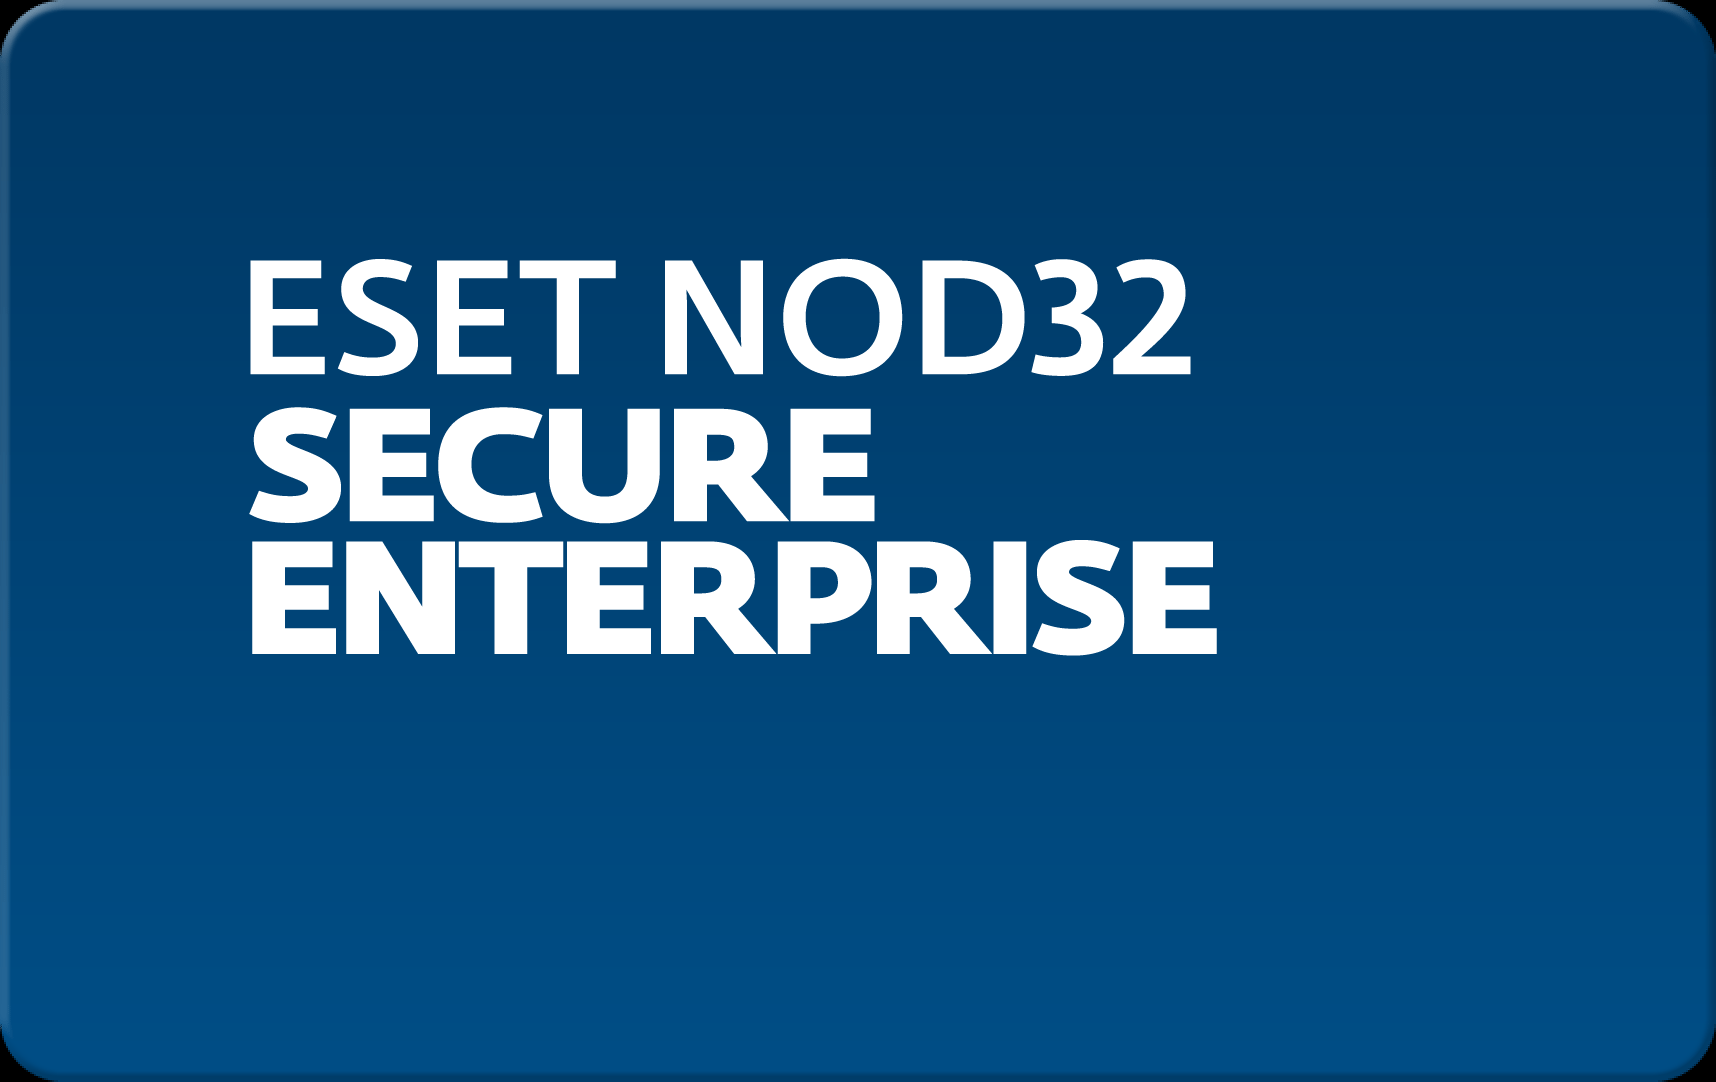        Eset NOD32 Secure Enterprise  166  NOD32-ESE-NS-1-166  #1